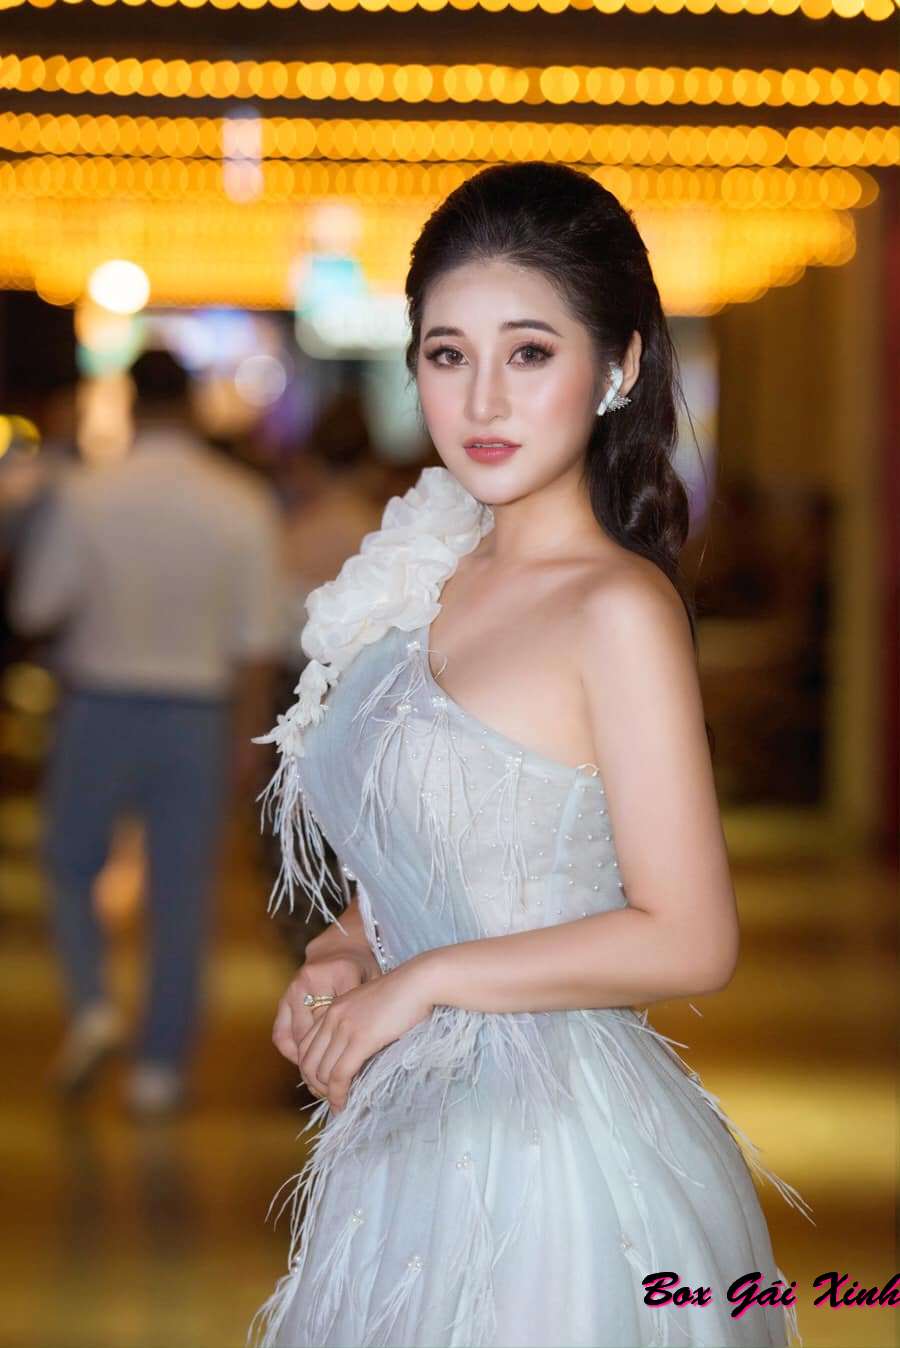 Hình ảnh Bùi Hồng Anh mặc váy dạ hội xinh đẹp lộng lẫy